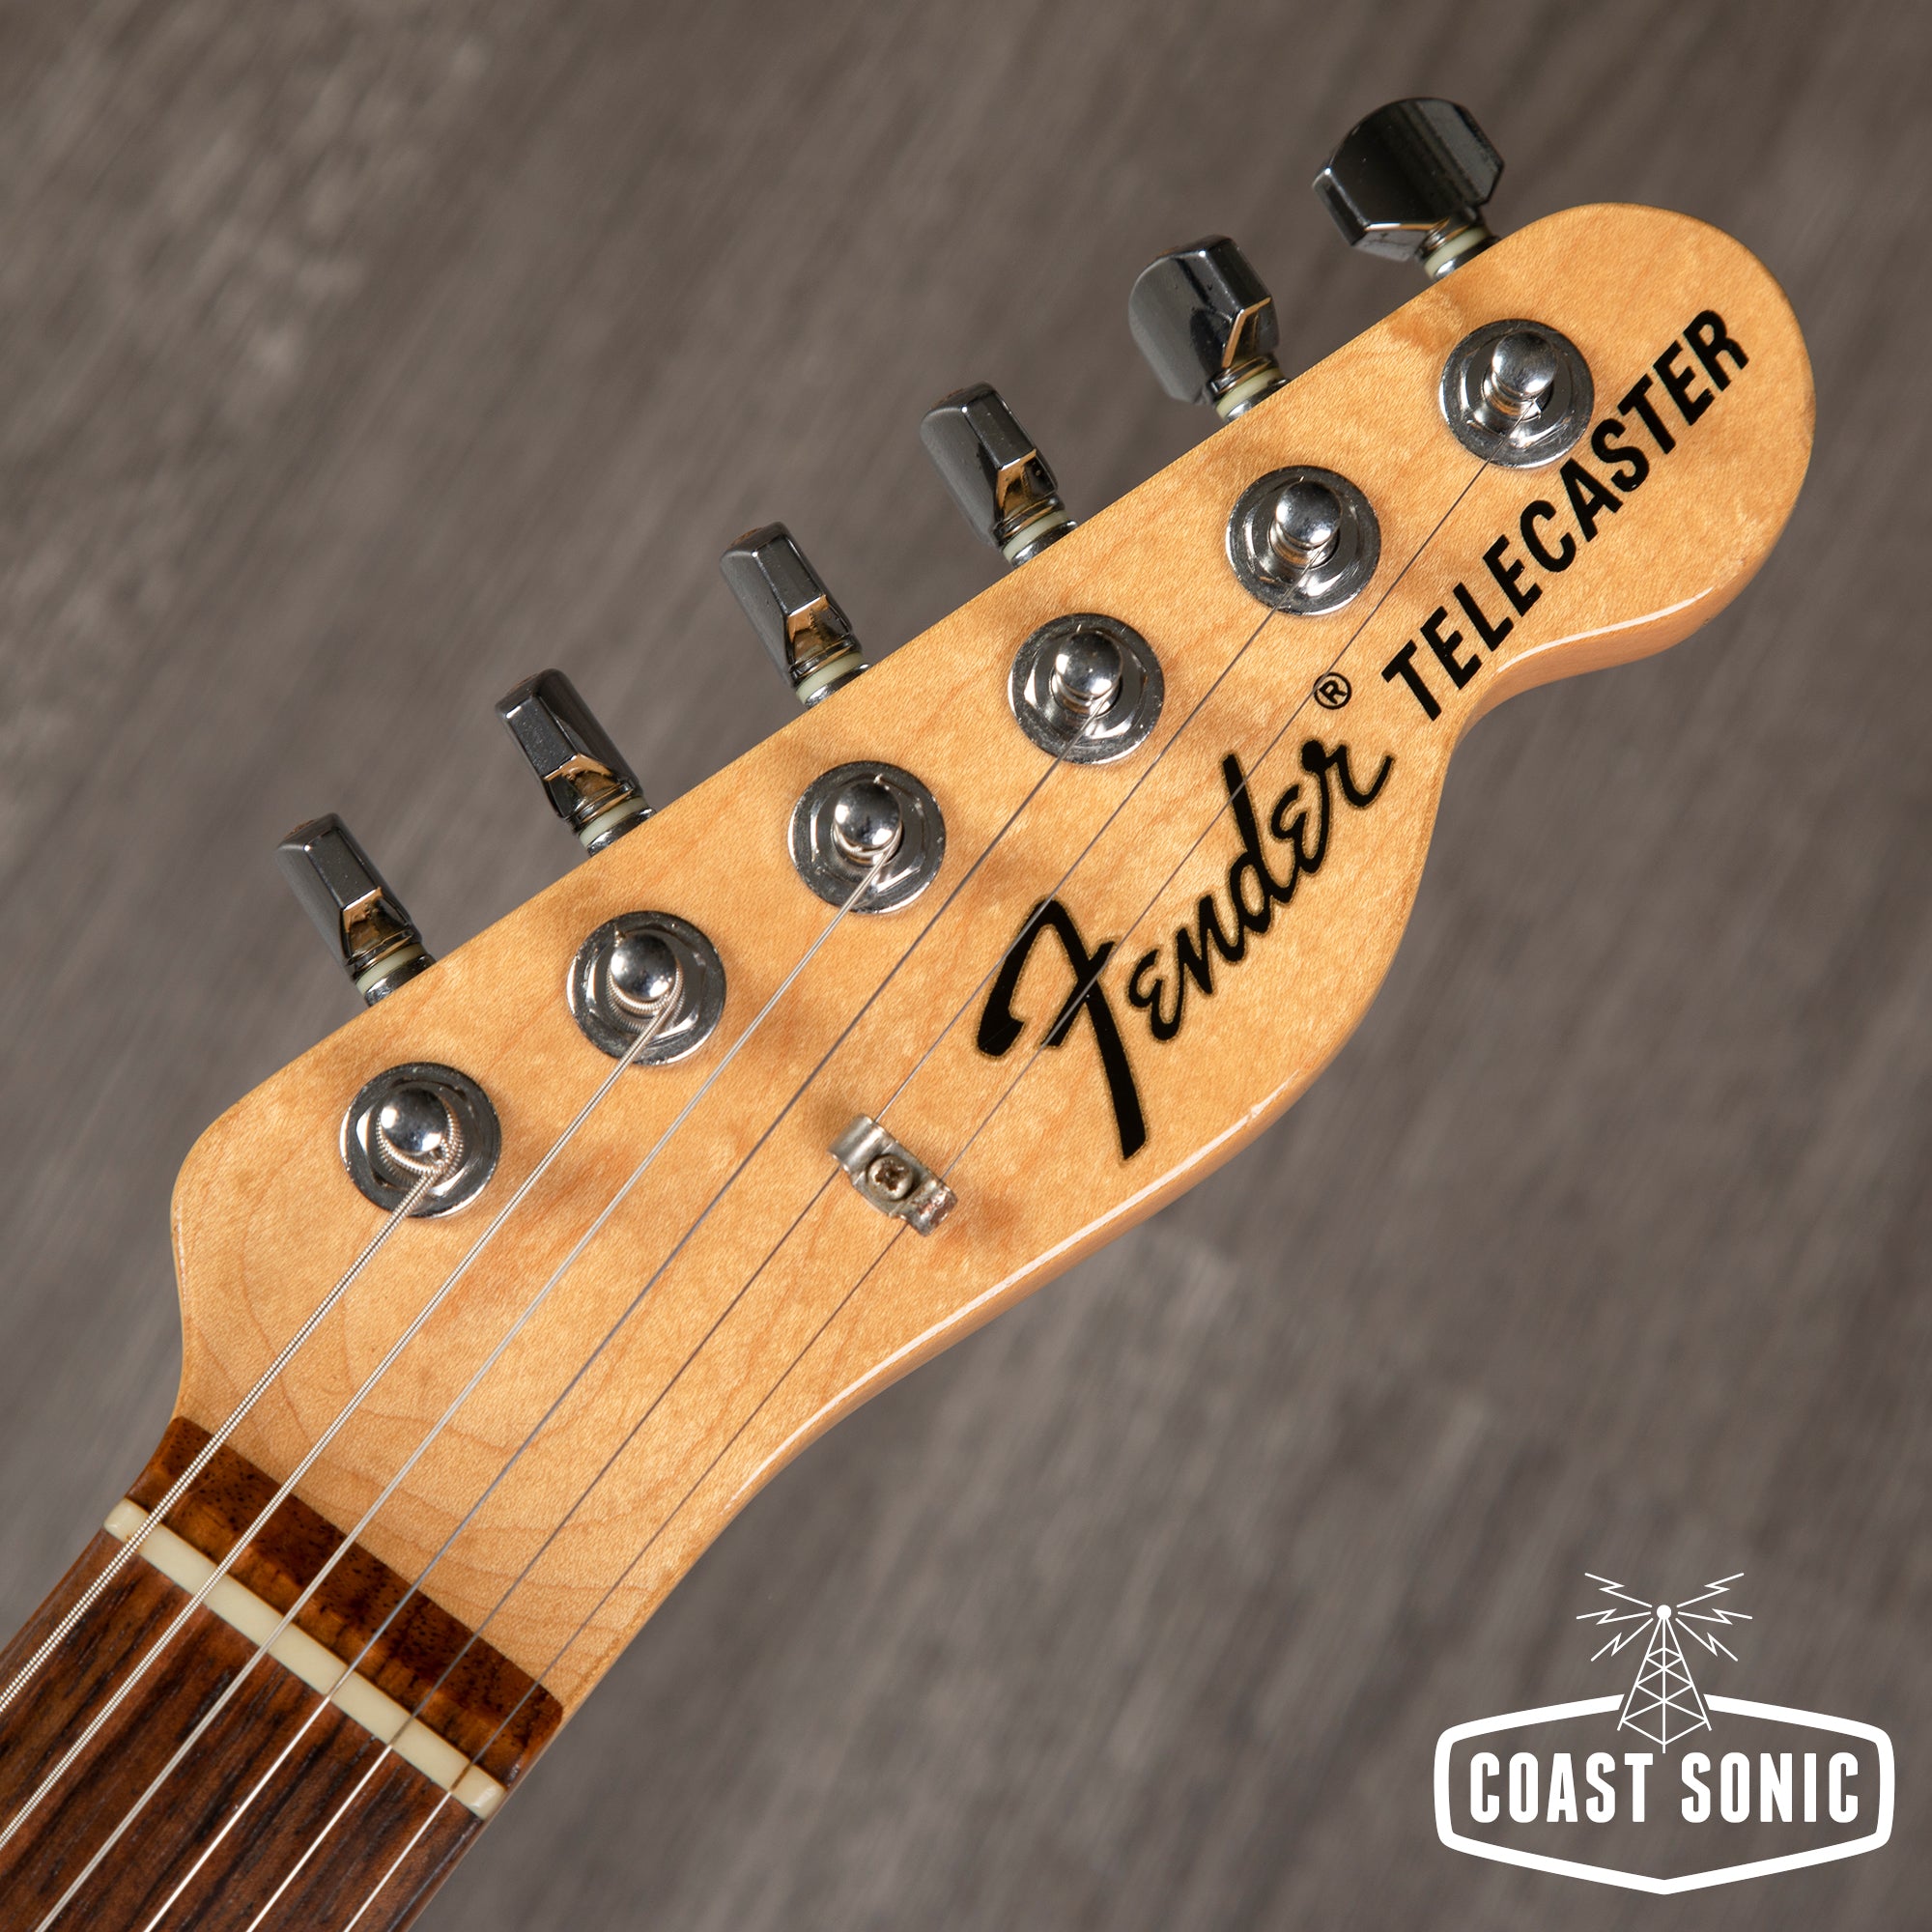 2013 Fender '71 Reissue Telecaster TL71 Made in Japan USA Fender Yosemite Pickups